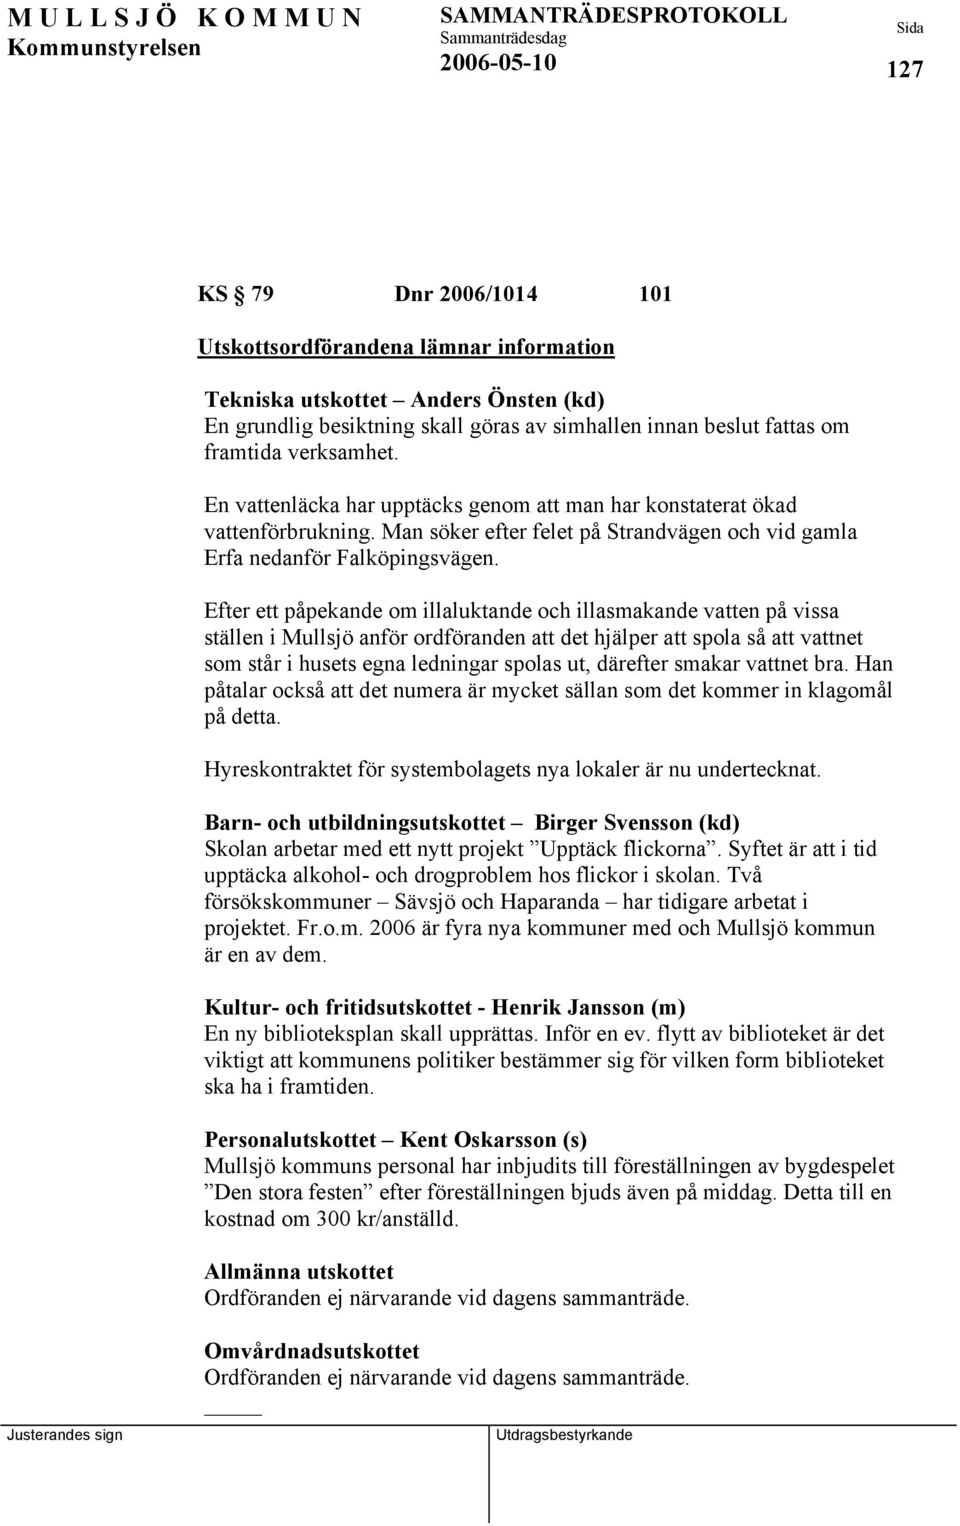 Efter ett påpekande om illaluktande och illasmakande vatten på vissa ställen i Mullsjö anför ordföranden att det hjälper att spola så att vattnet som står i husets egna ledningar spolas ut, därefter